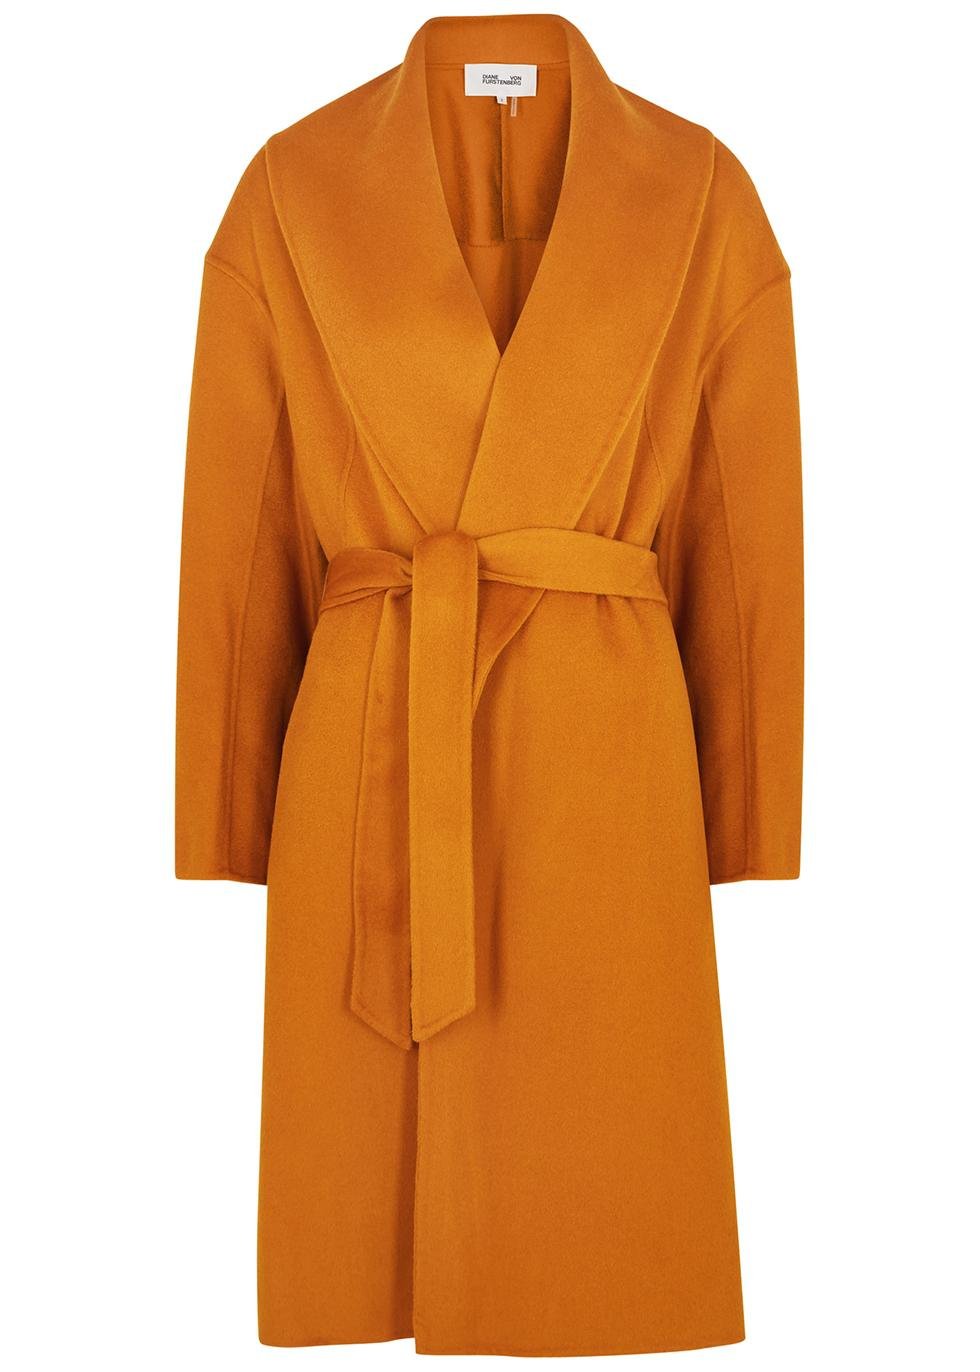 Nico orange wool felt coat by DIANE VON FURSTENBERG